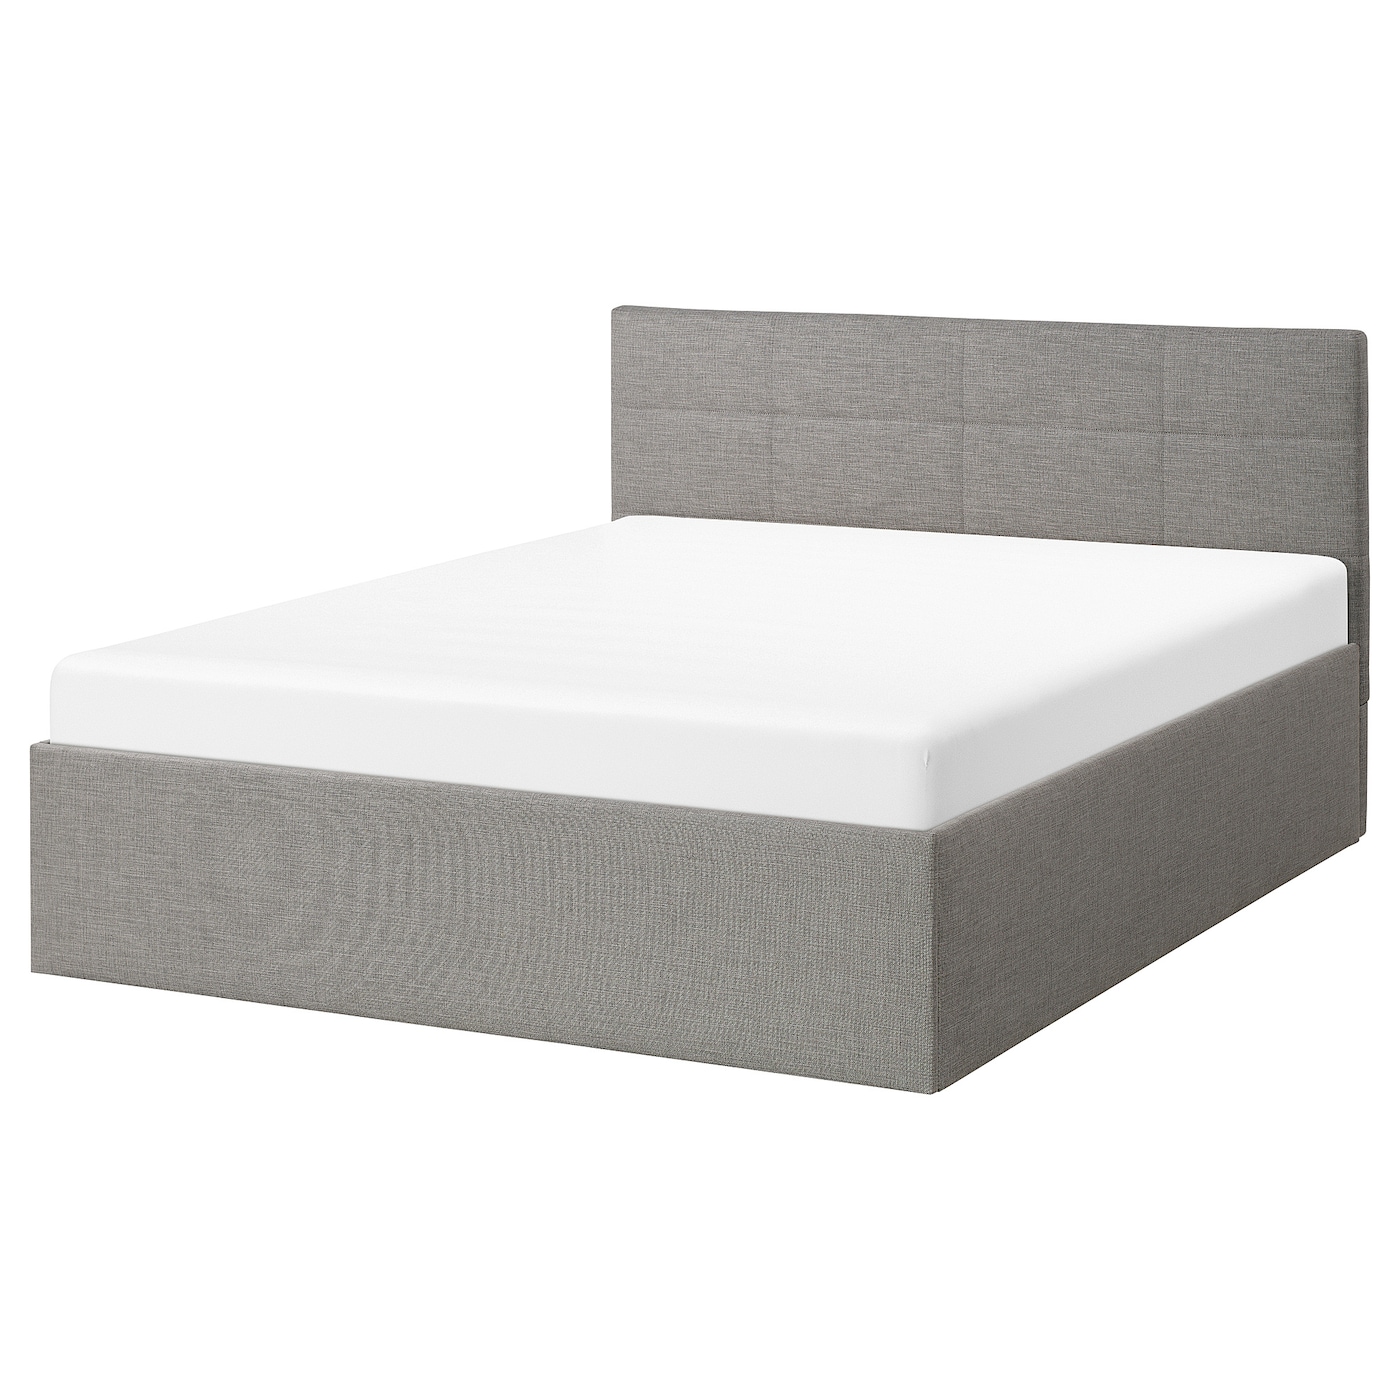 Основание двуспальной кровати - IKEA SKARVLO, 200х140 см, серый, СКАРВЛО ИКЕА